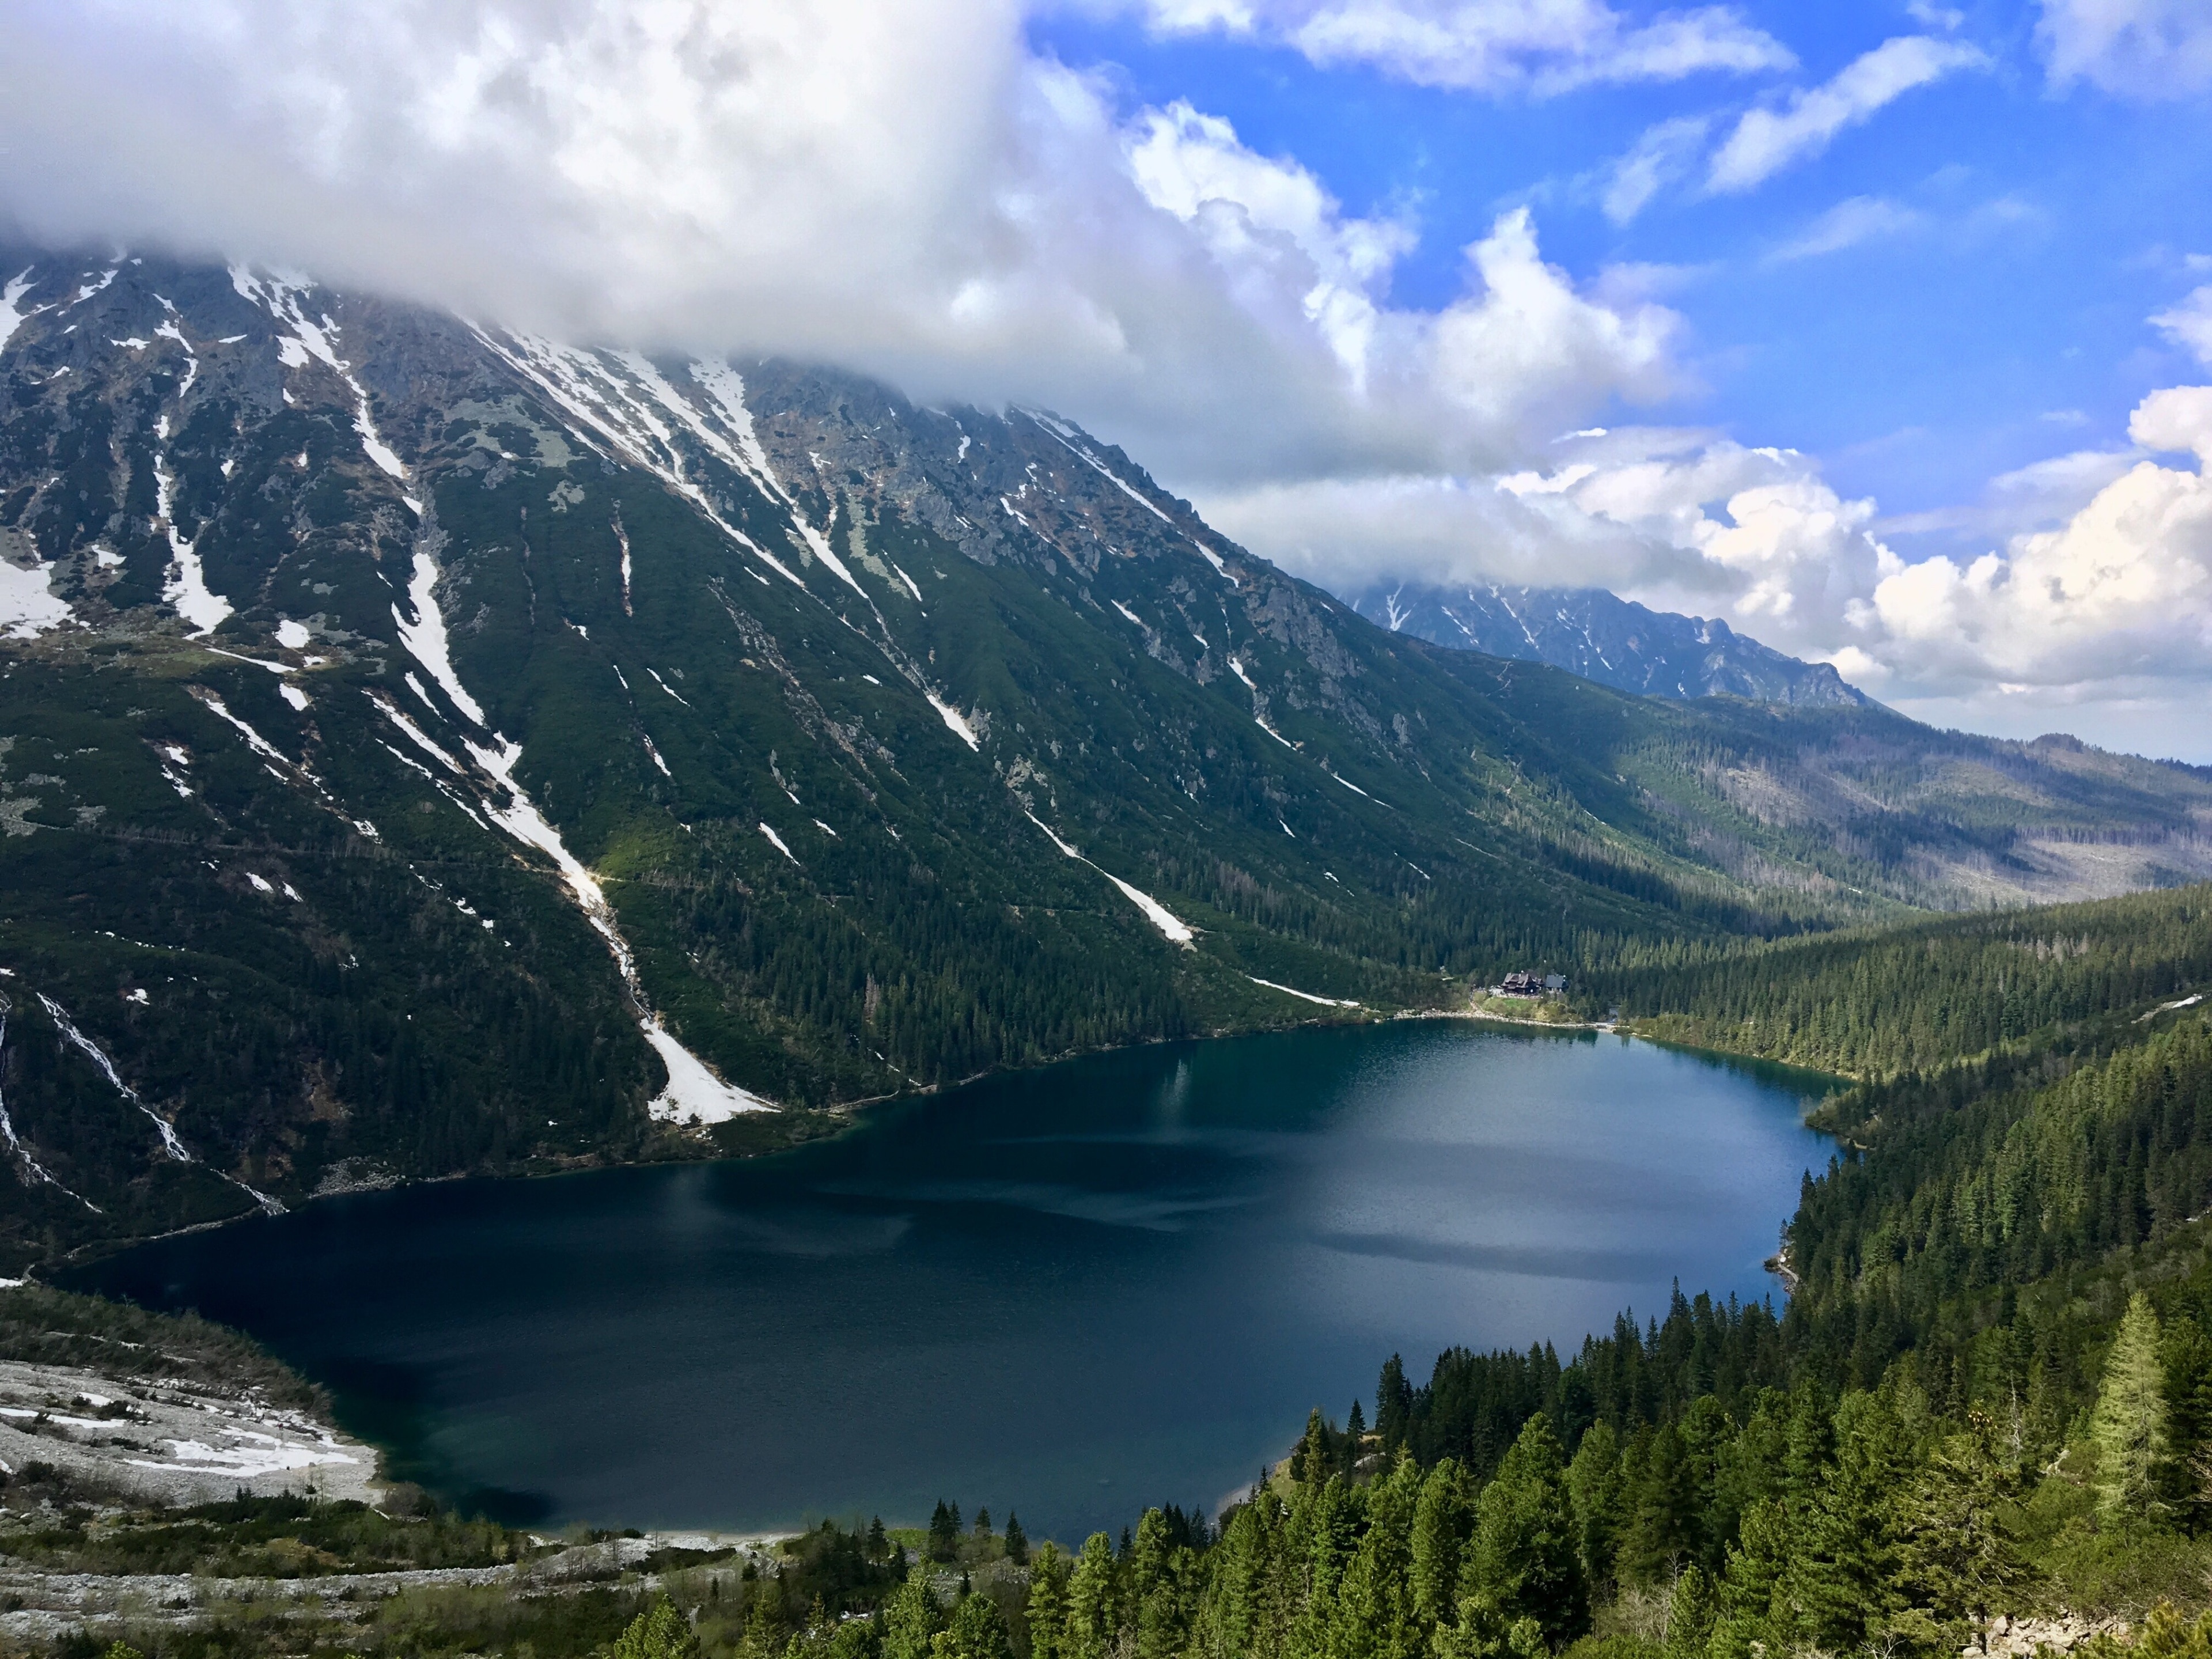 Tatra Mountains😍🇵🇱🥾🏔
#Poland #Tatra #lake #Morskie Oko #mountains